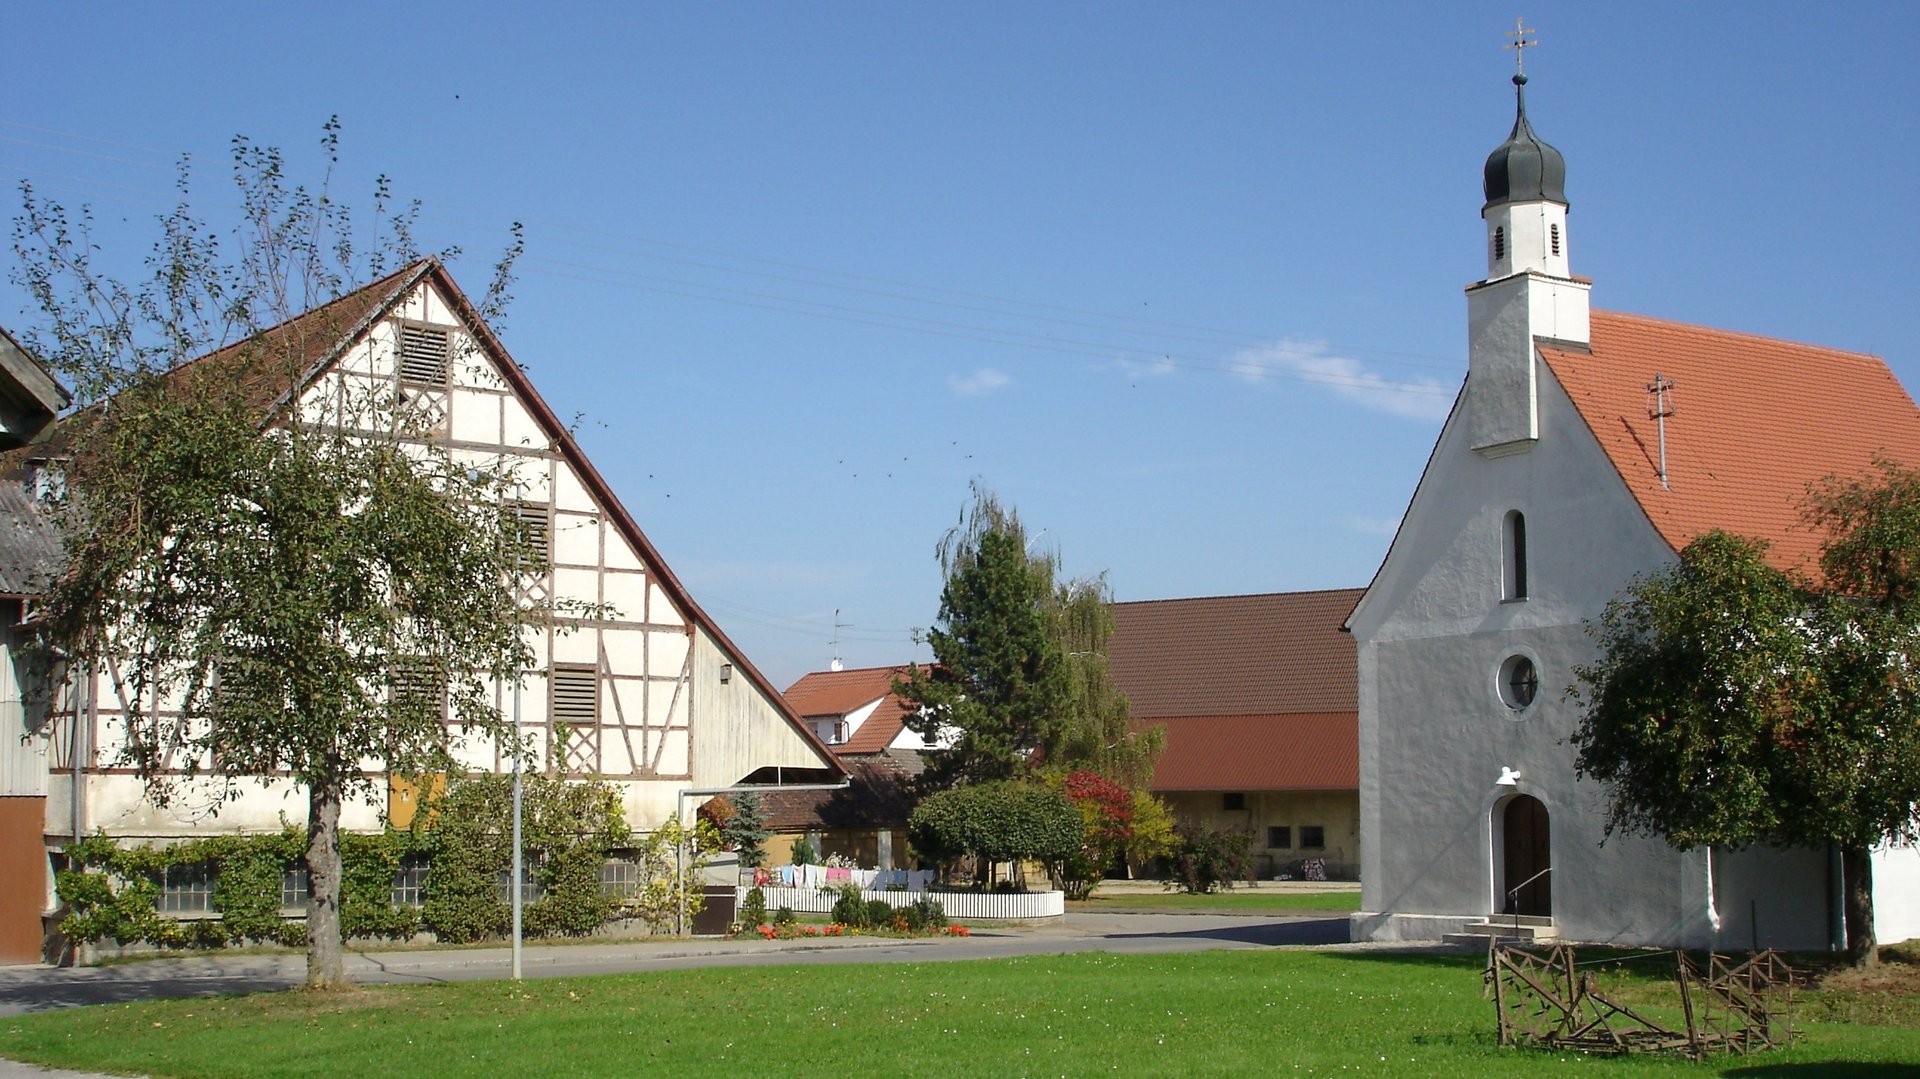 Dattenhausen